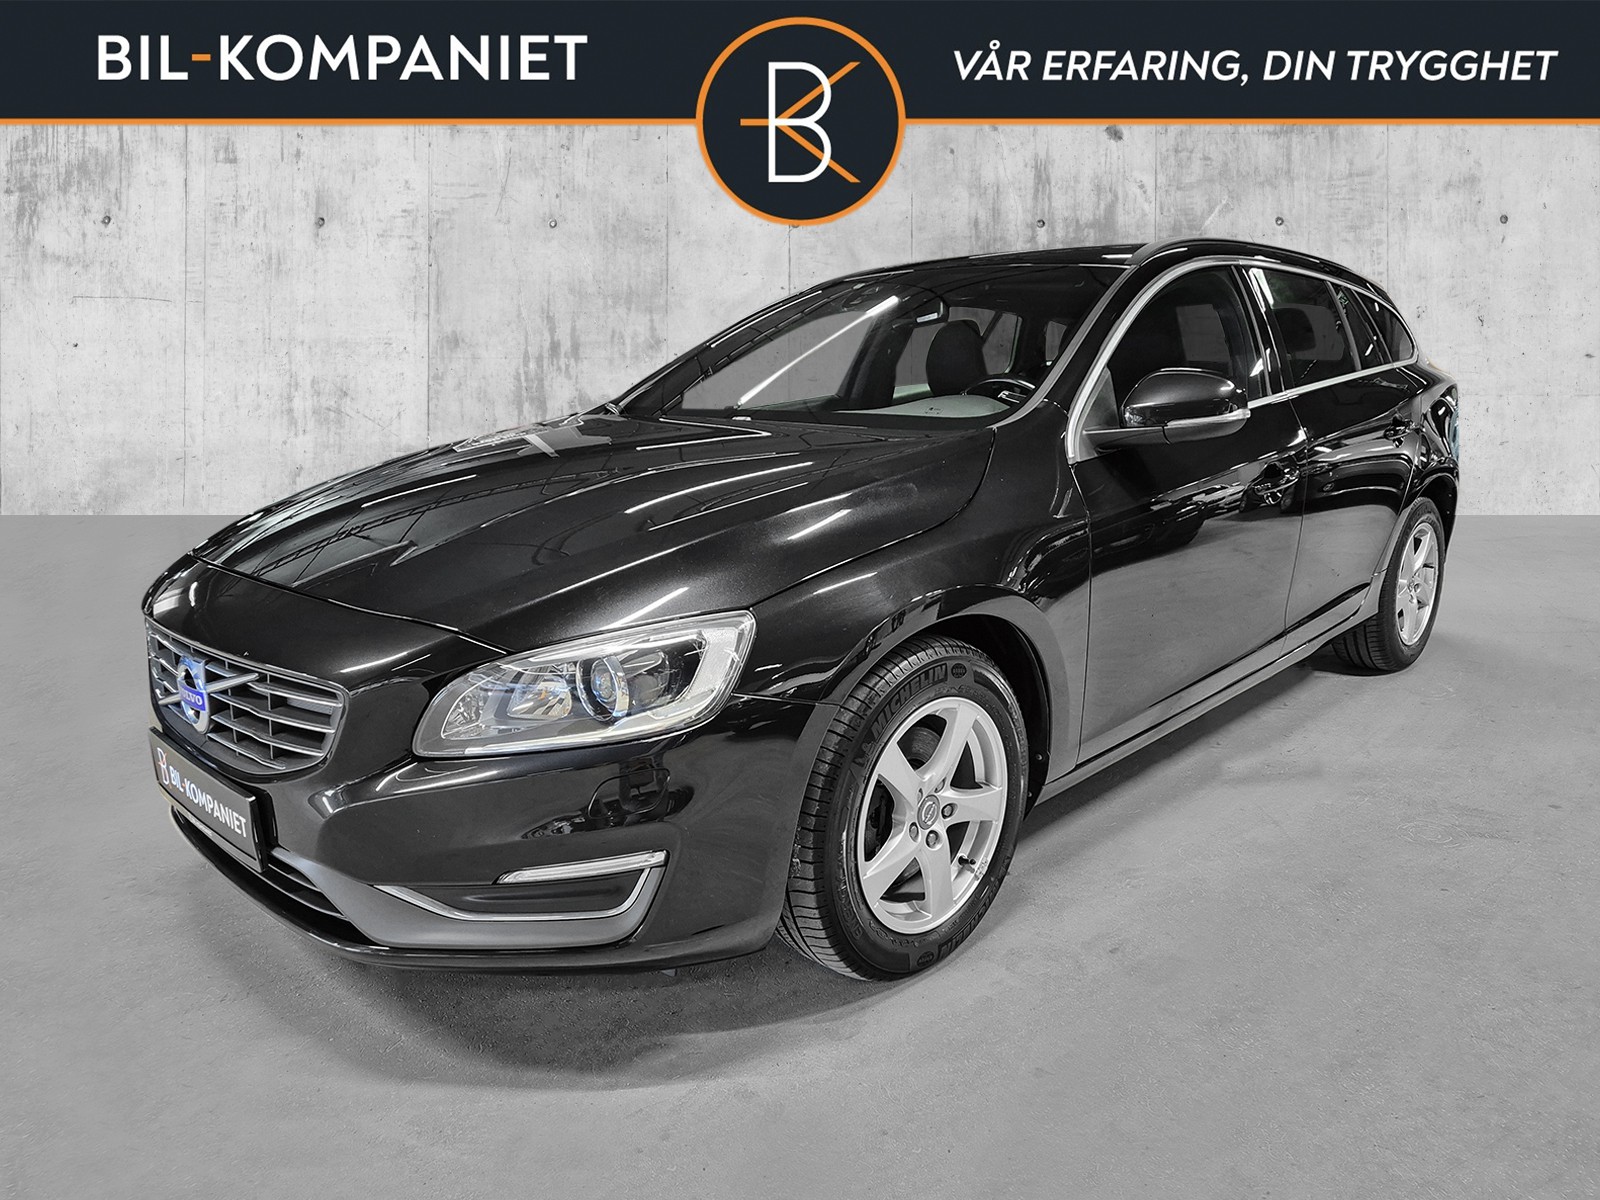 Bilde av 'Volvo V60 2015'